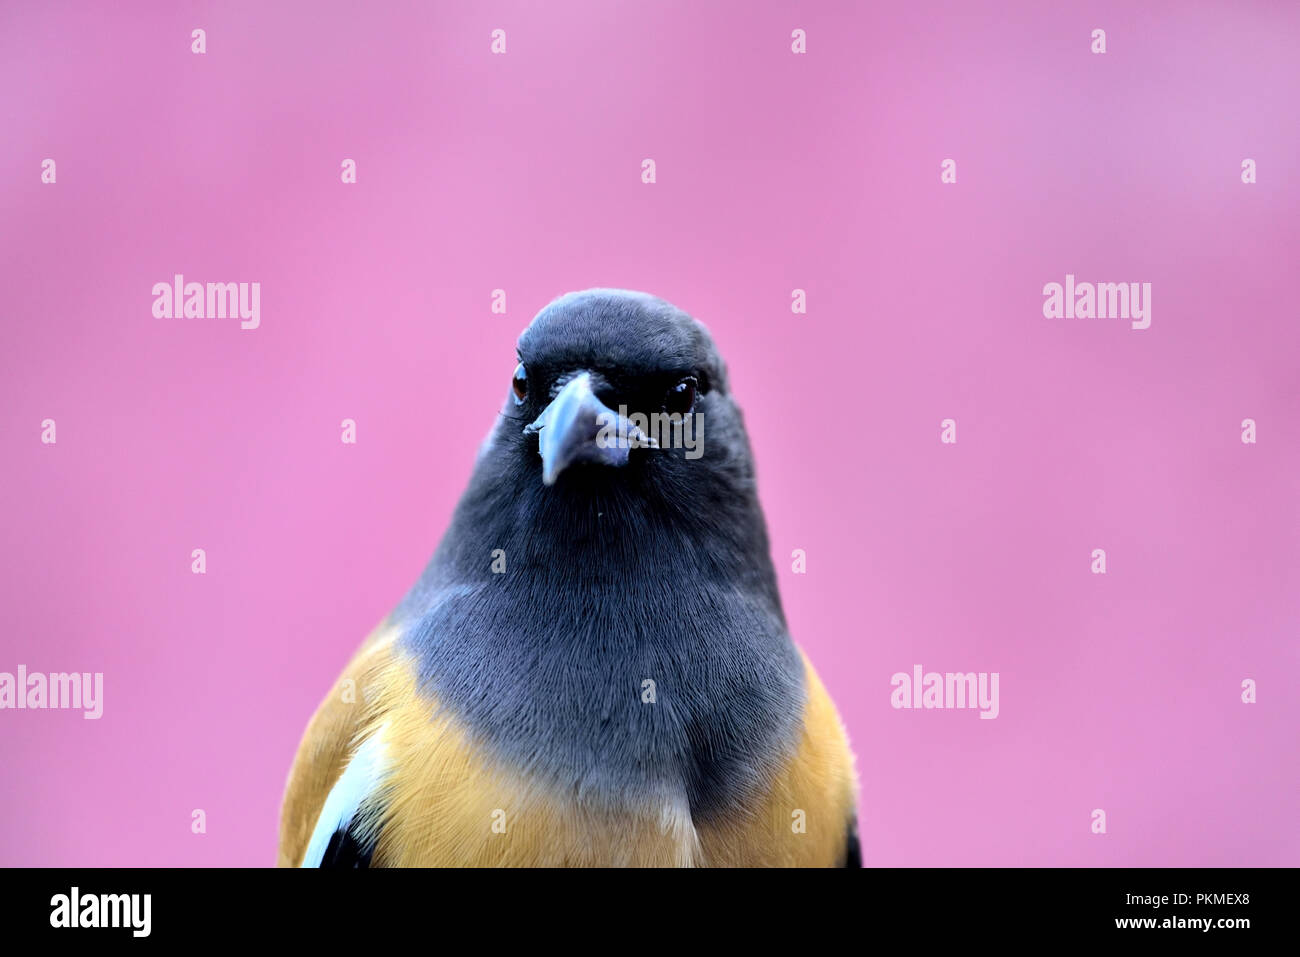 Close up of a bird Stock Photo